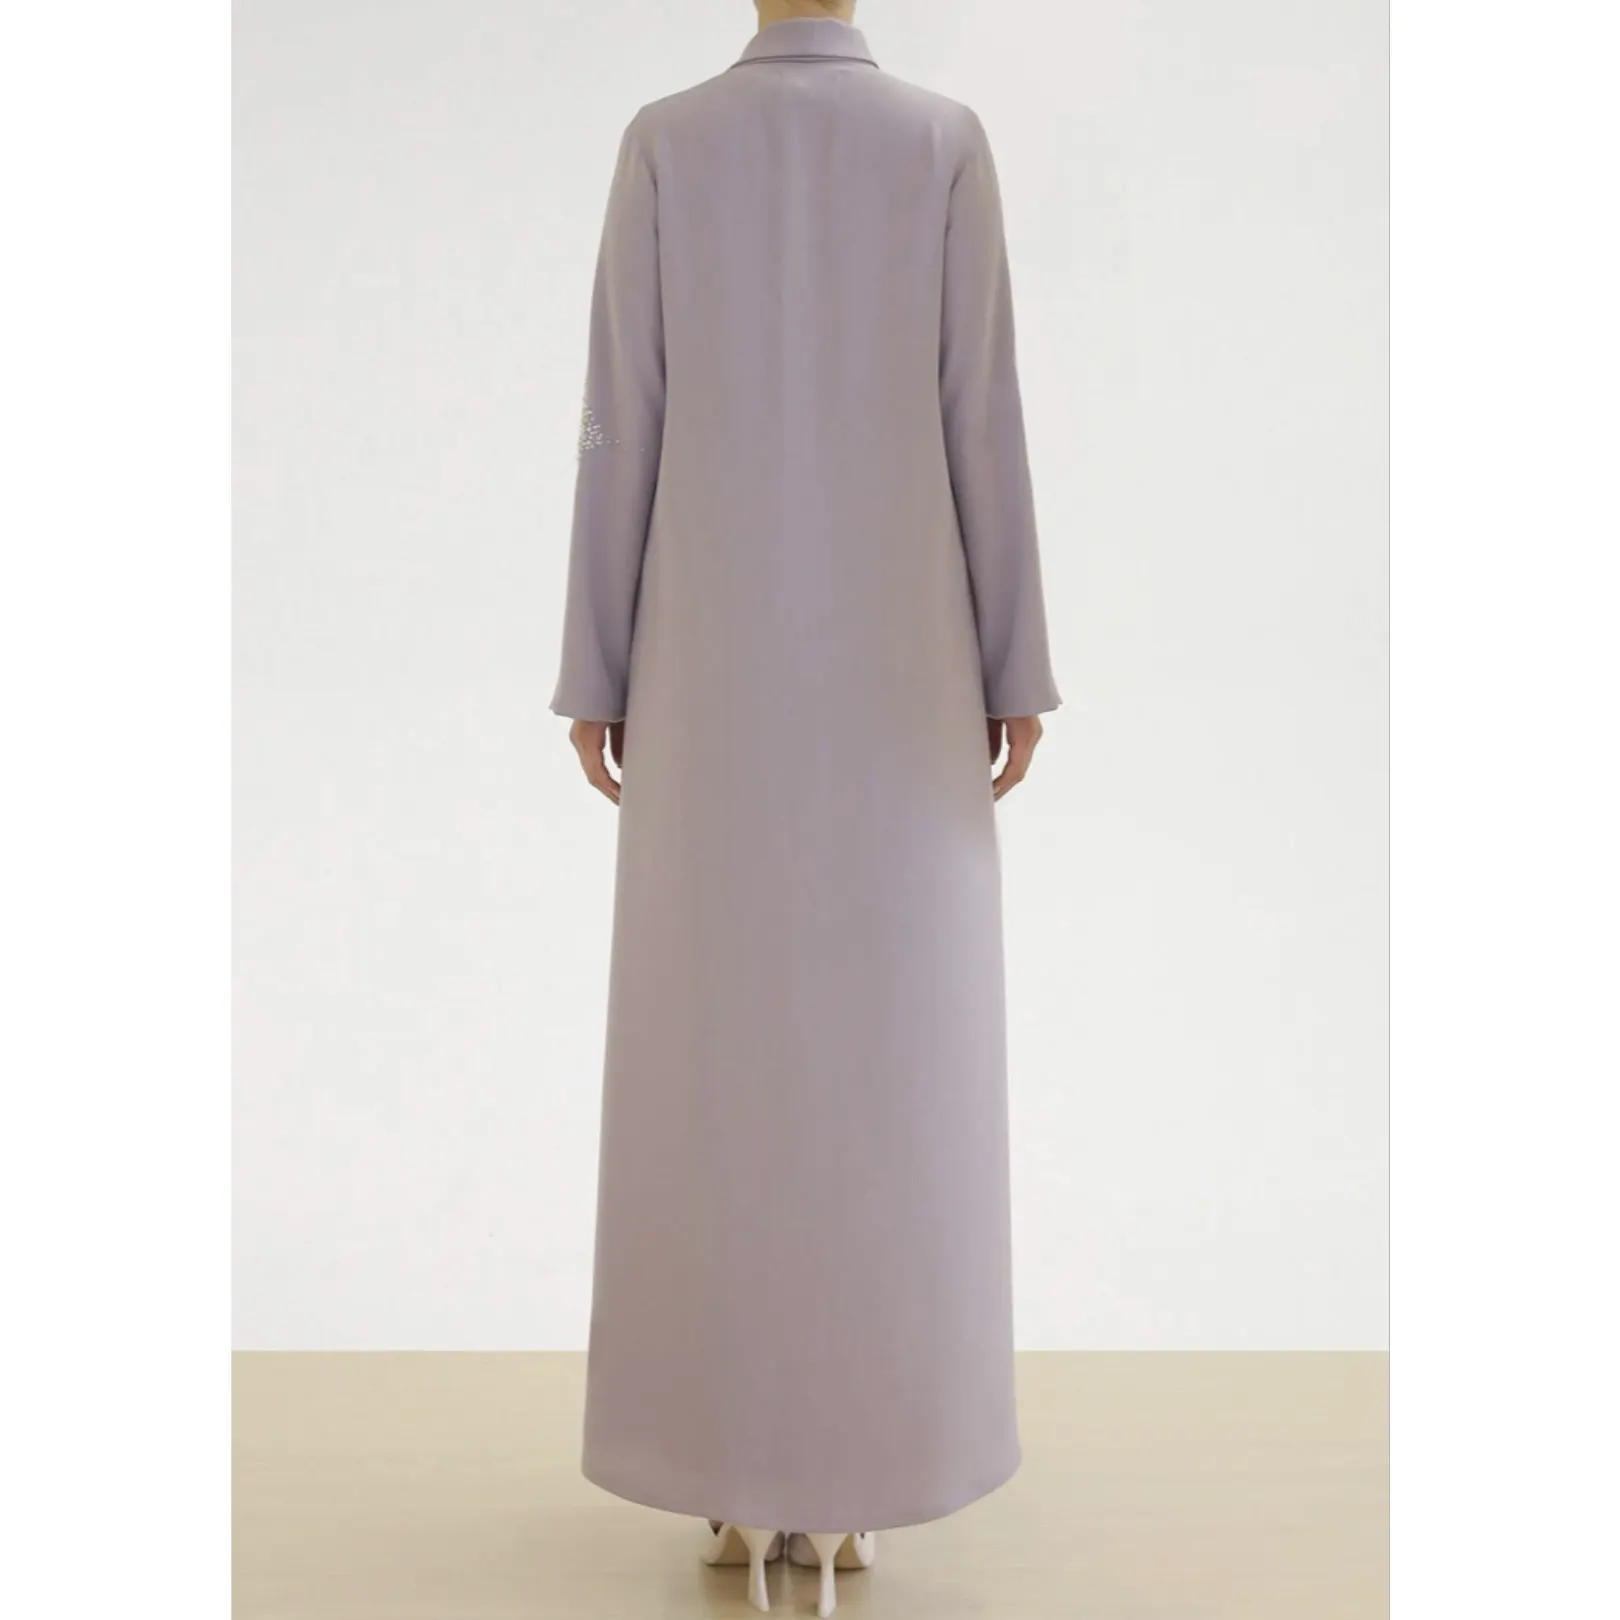 Stickerei Großhandel Custom Dubai Neueste Designs Ethnische Islamische Kleidung Lange Einfache Abaya Frauen traditionelles muslimisches Kleid